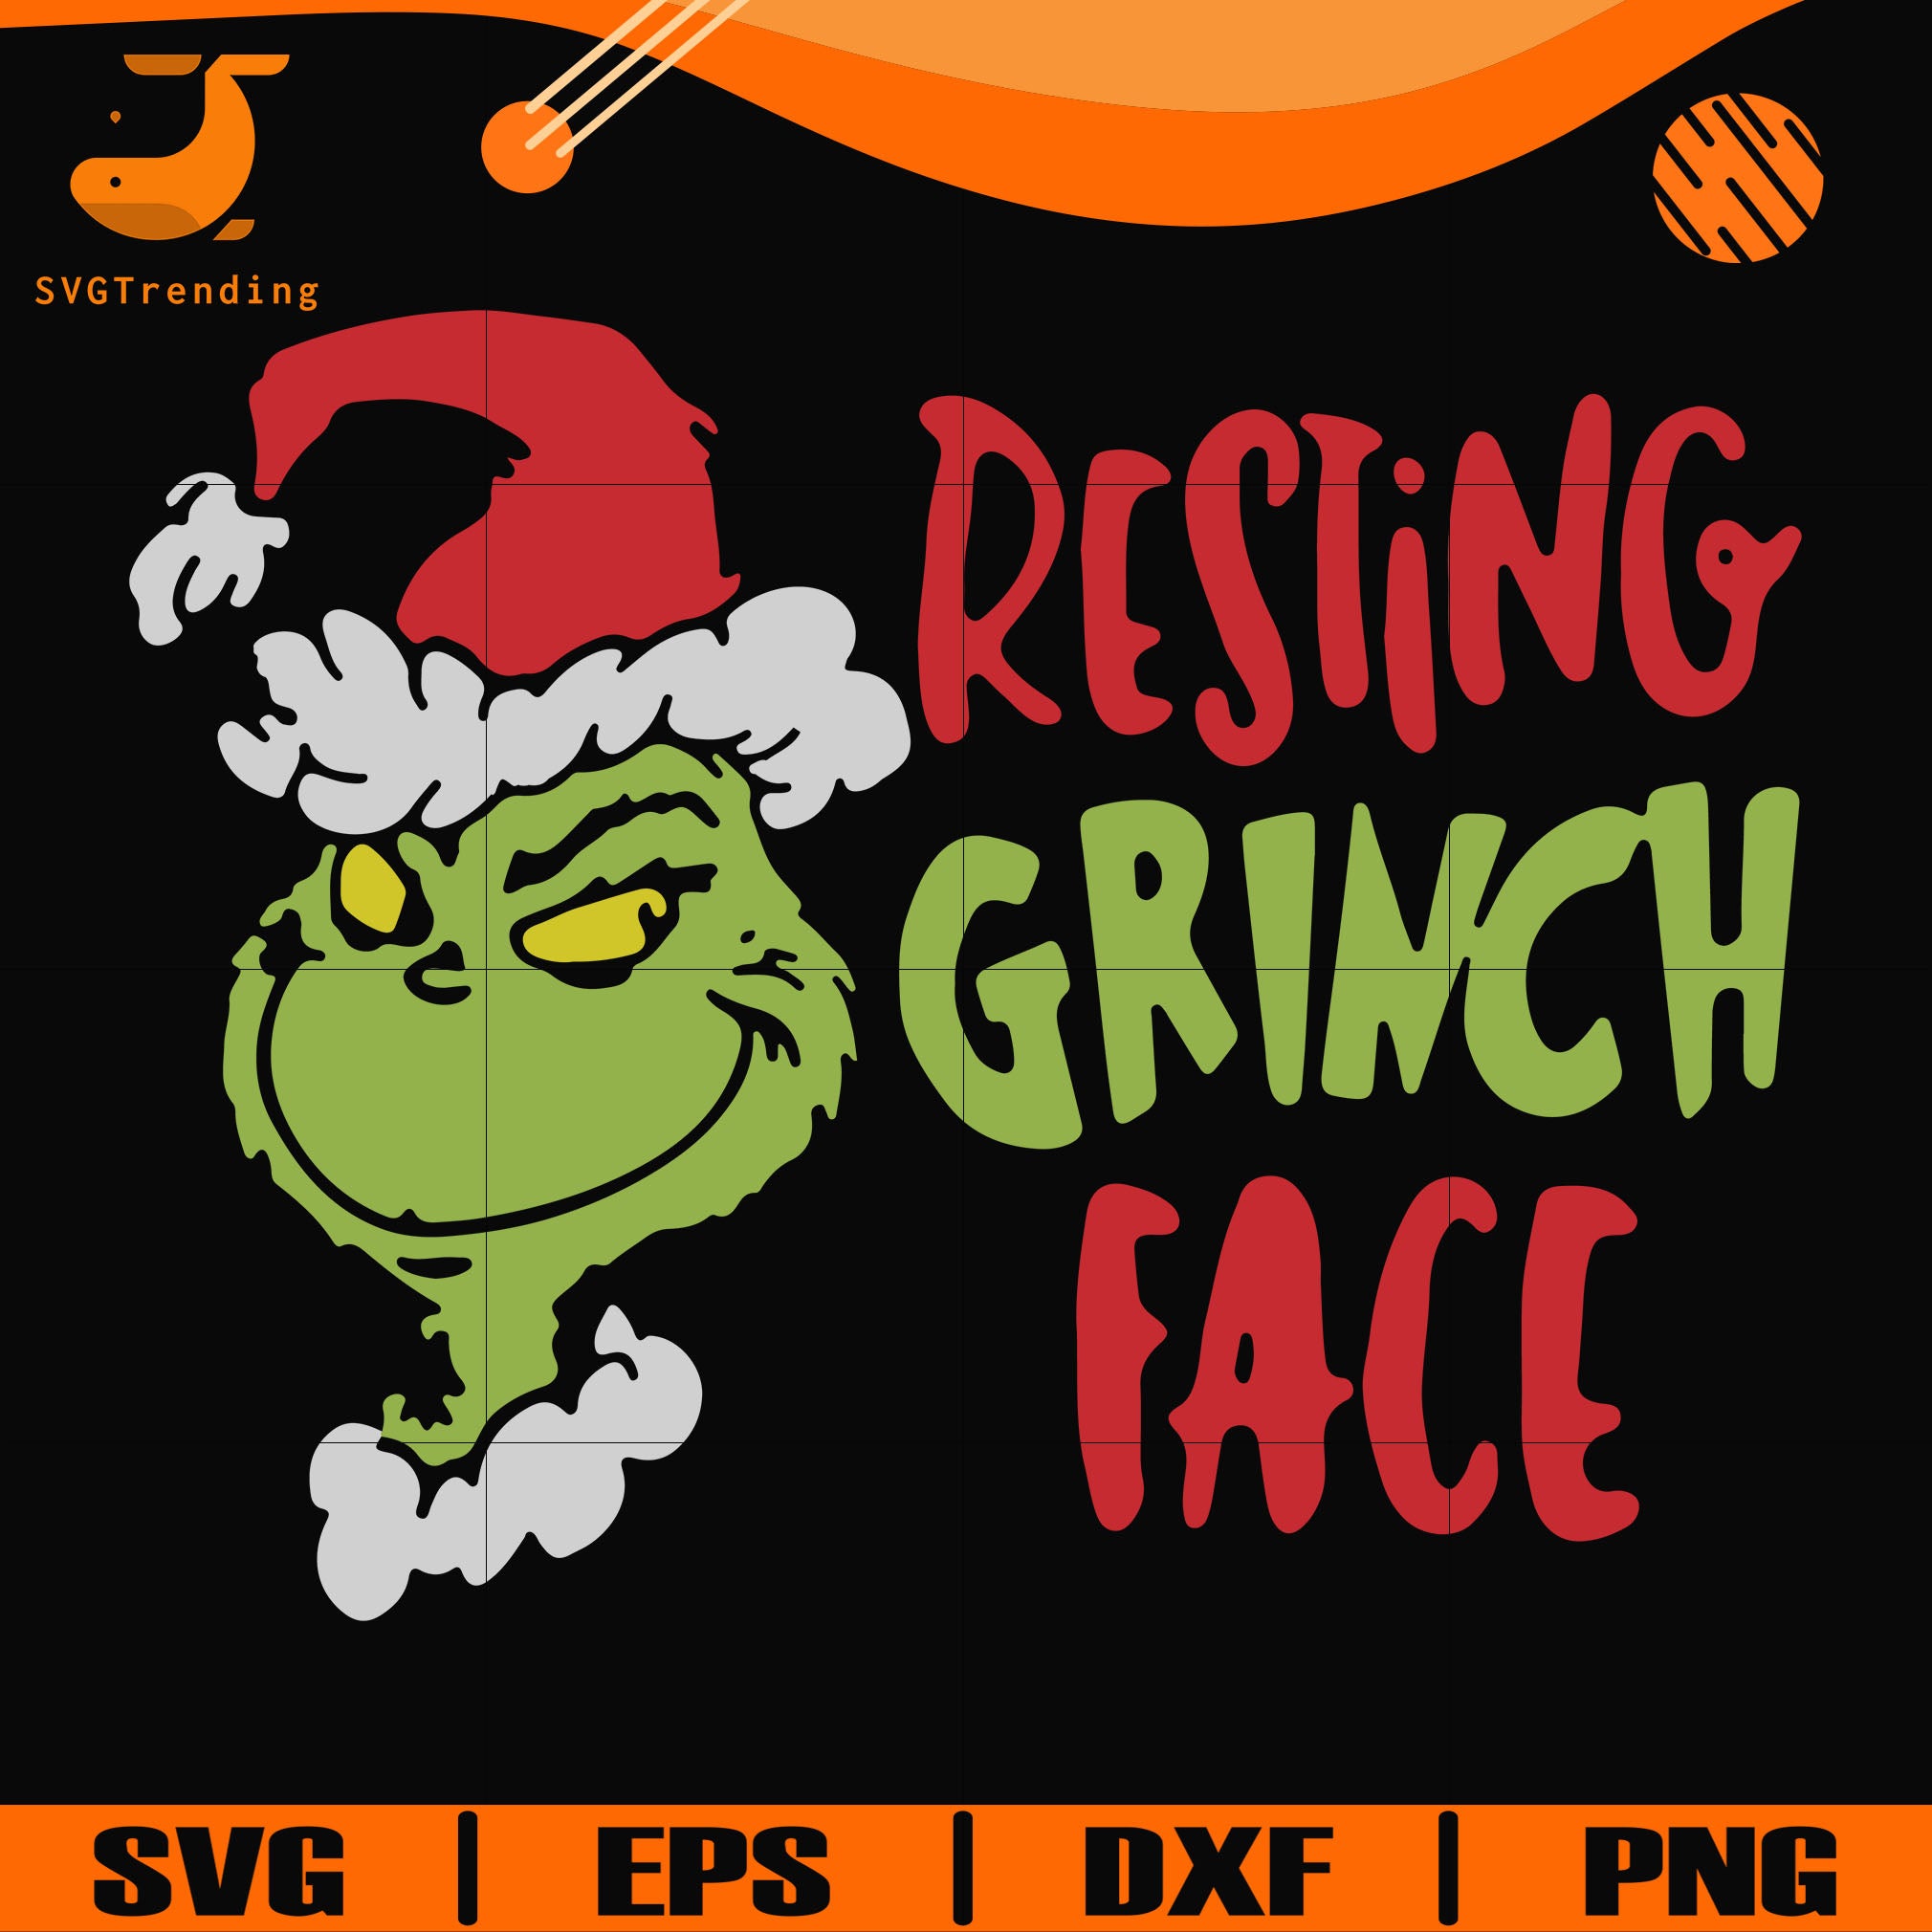 Download Resting Grinch Face Svg Png Dxf Eps Digital File Ncrm13072028 Svgtrending SVG, PNG, EPS, DXF File